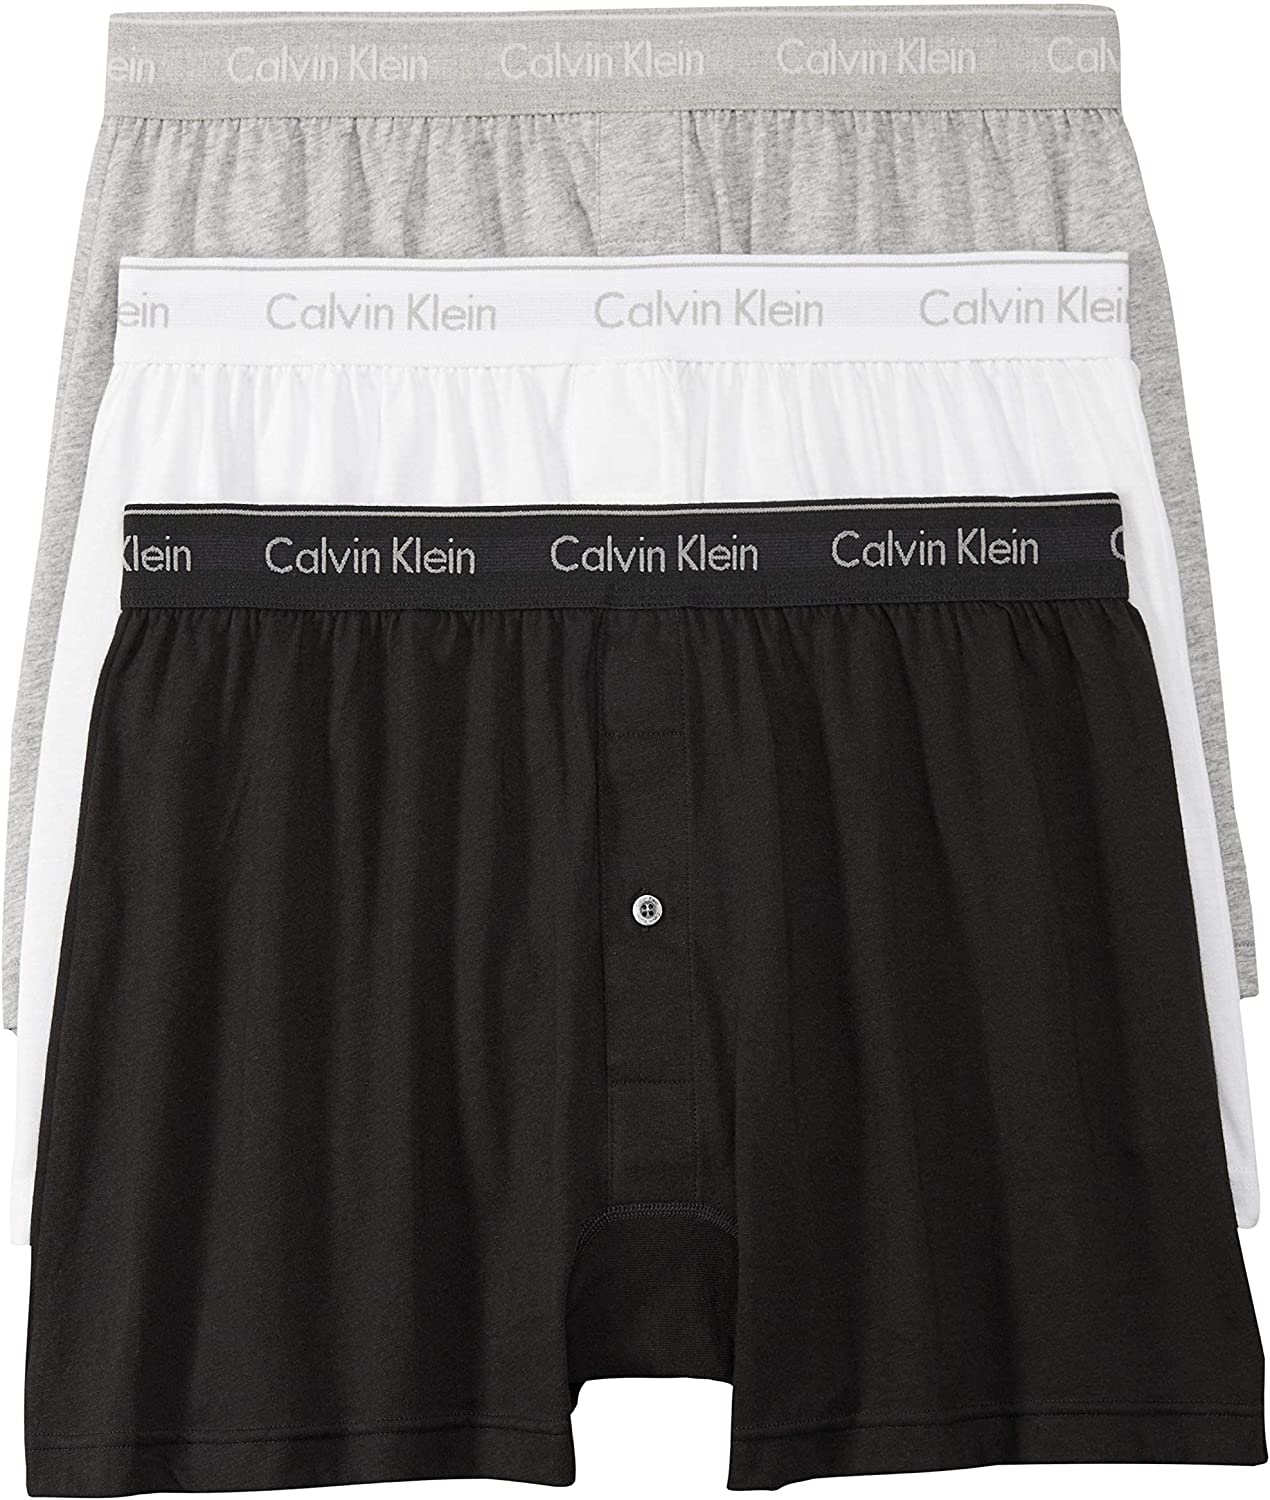 Calvin Klein Men's 3pk Cotton Knit Boxer Shorts Multi Color Style